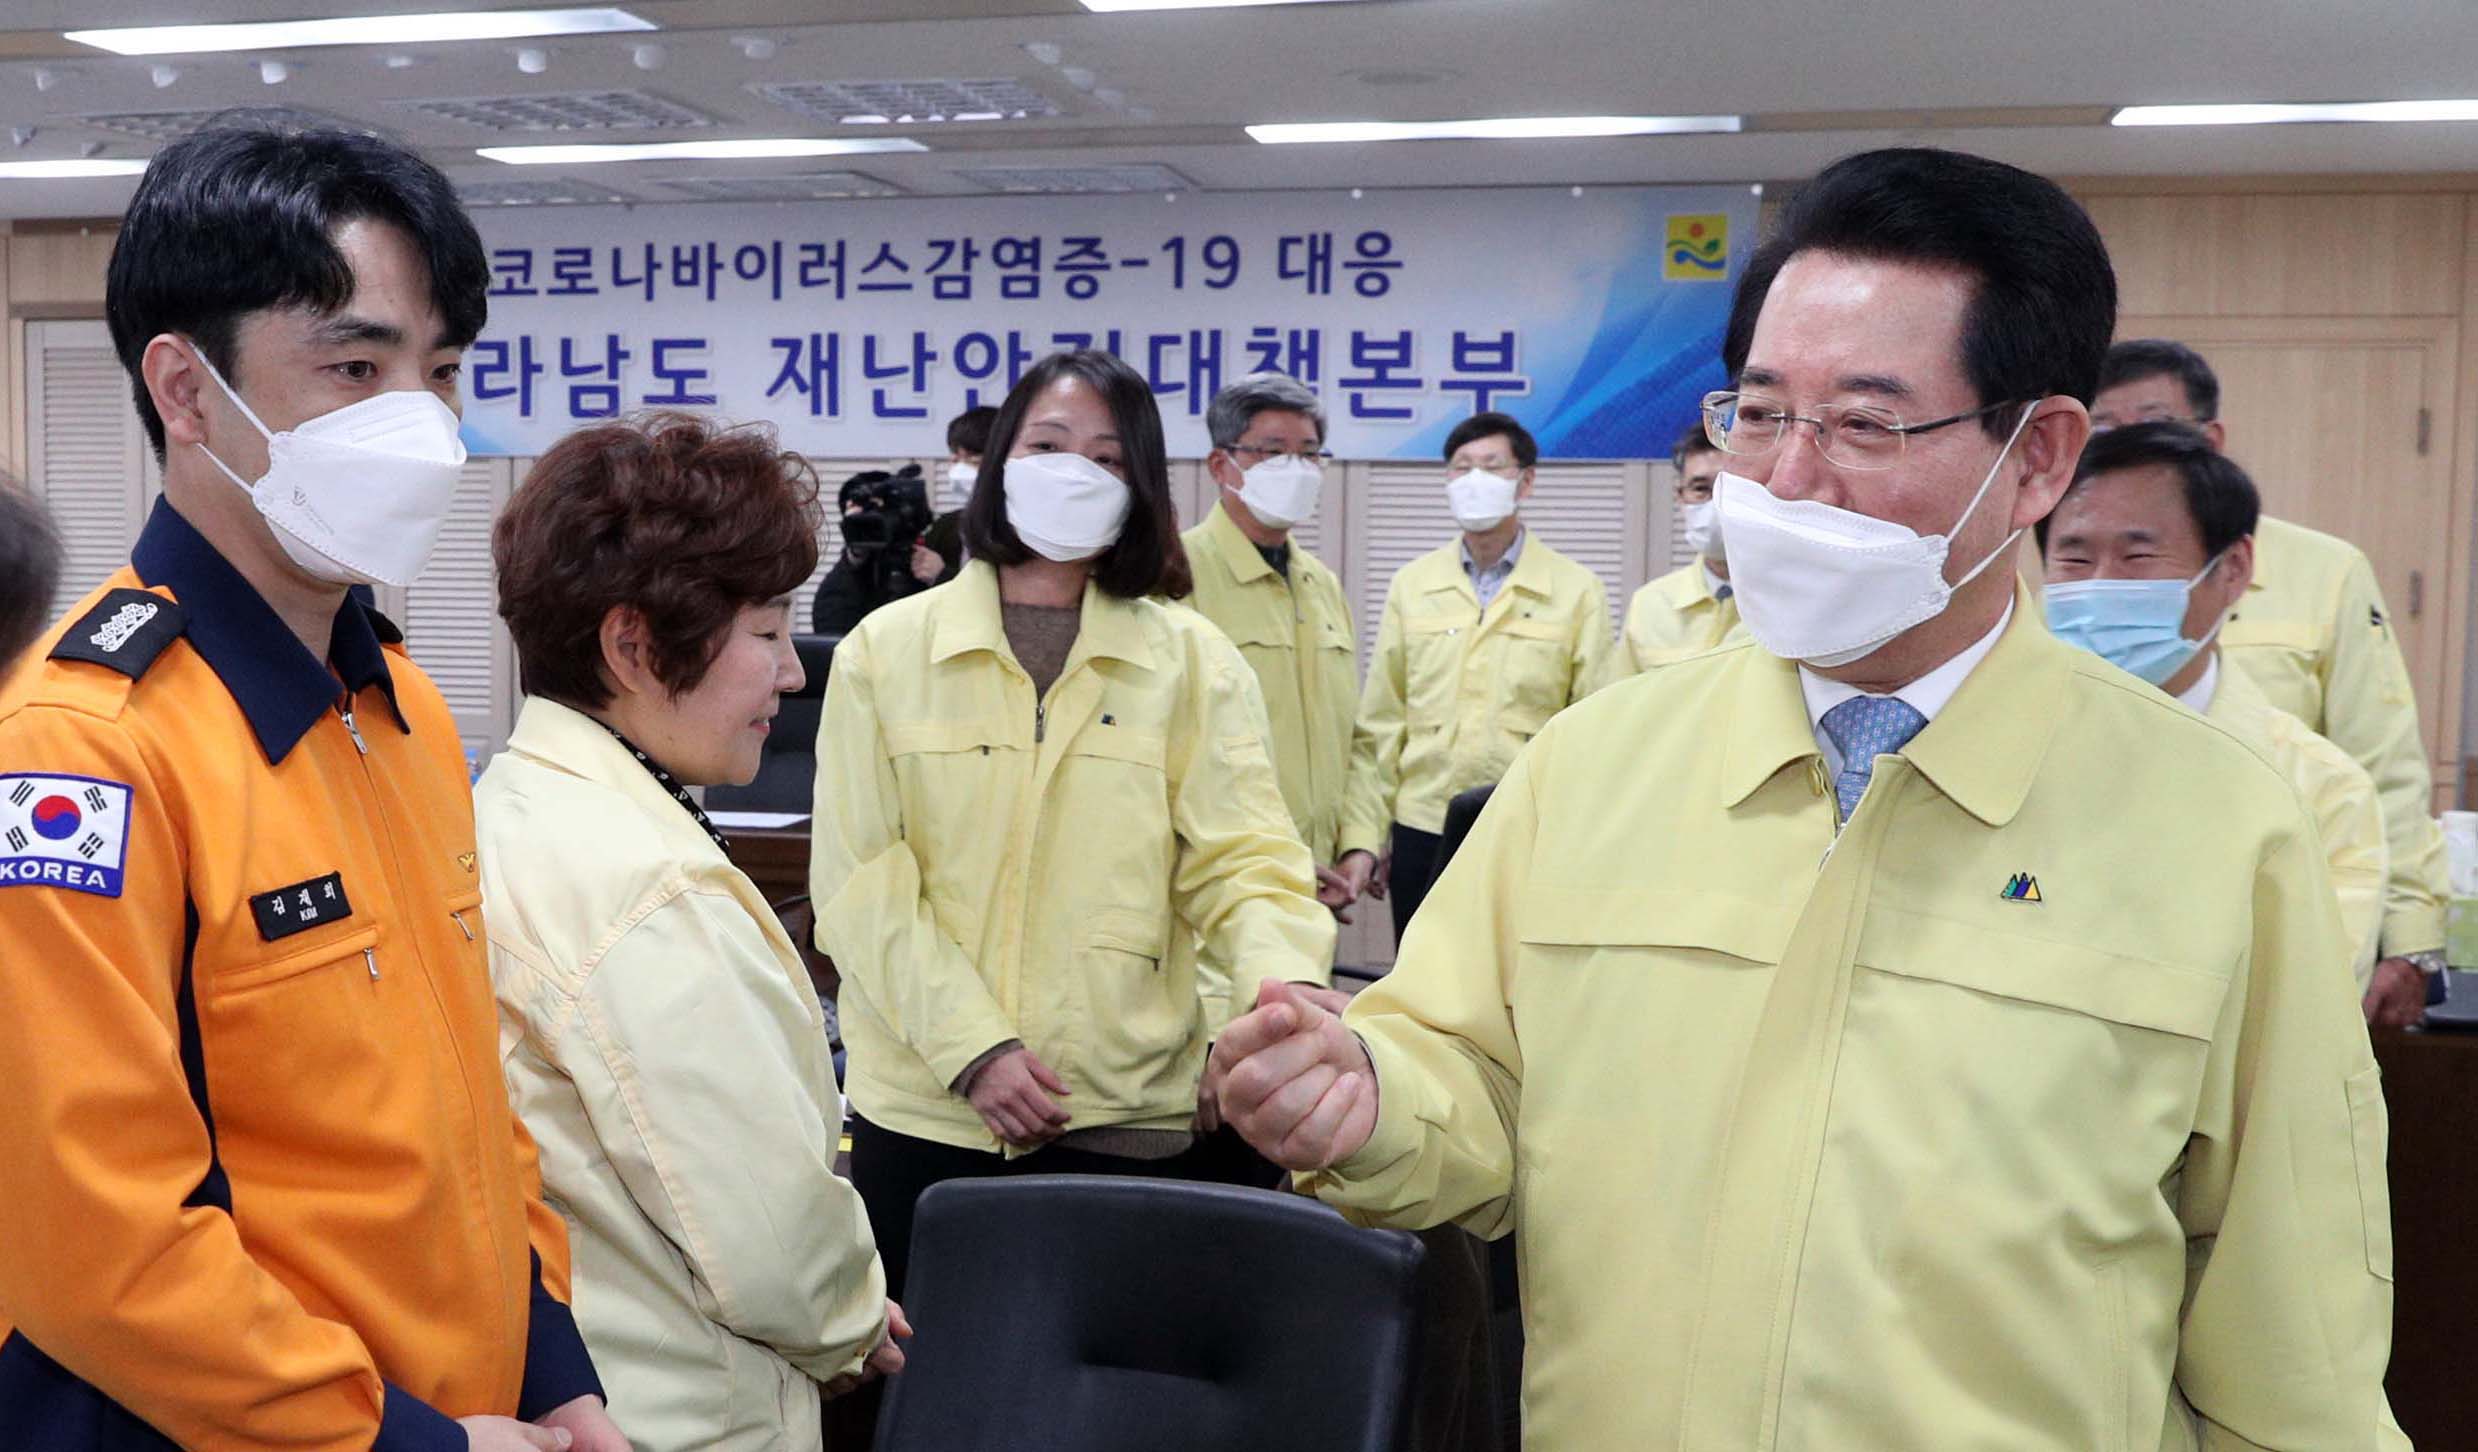 ‘코로나바이러스 감염증-19 대응 전라남도 재난안전대책본부’ 상황근무자 격려2